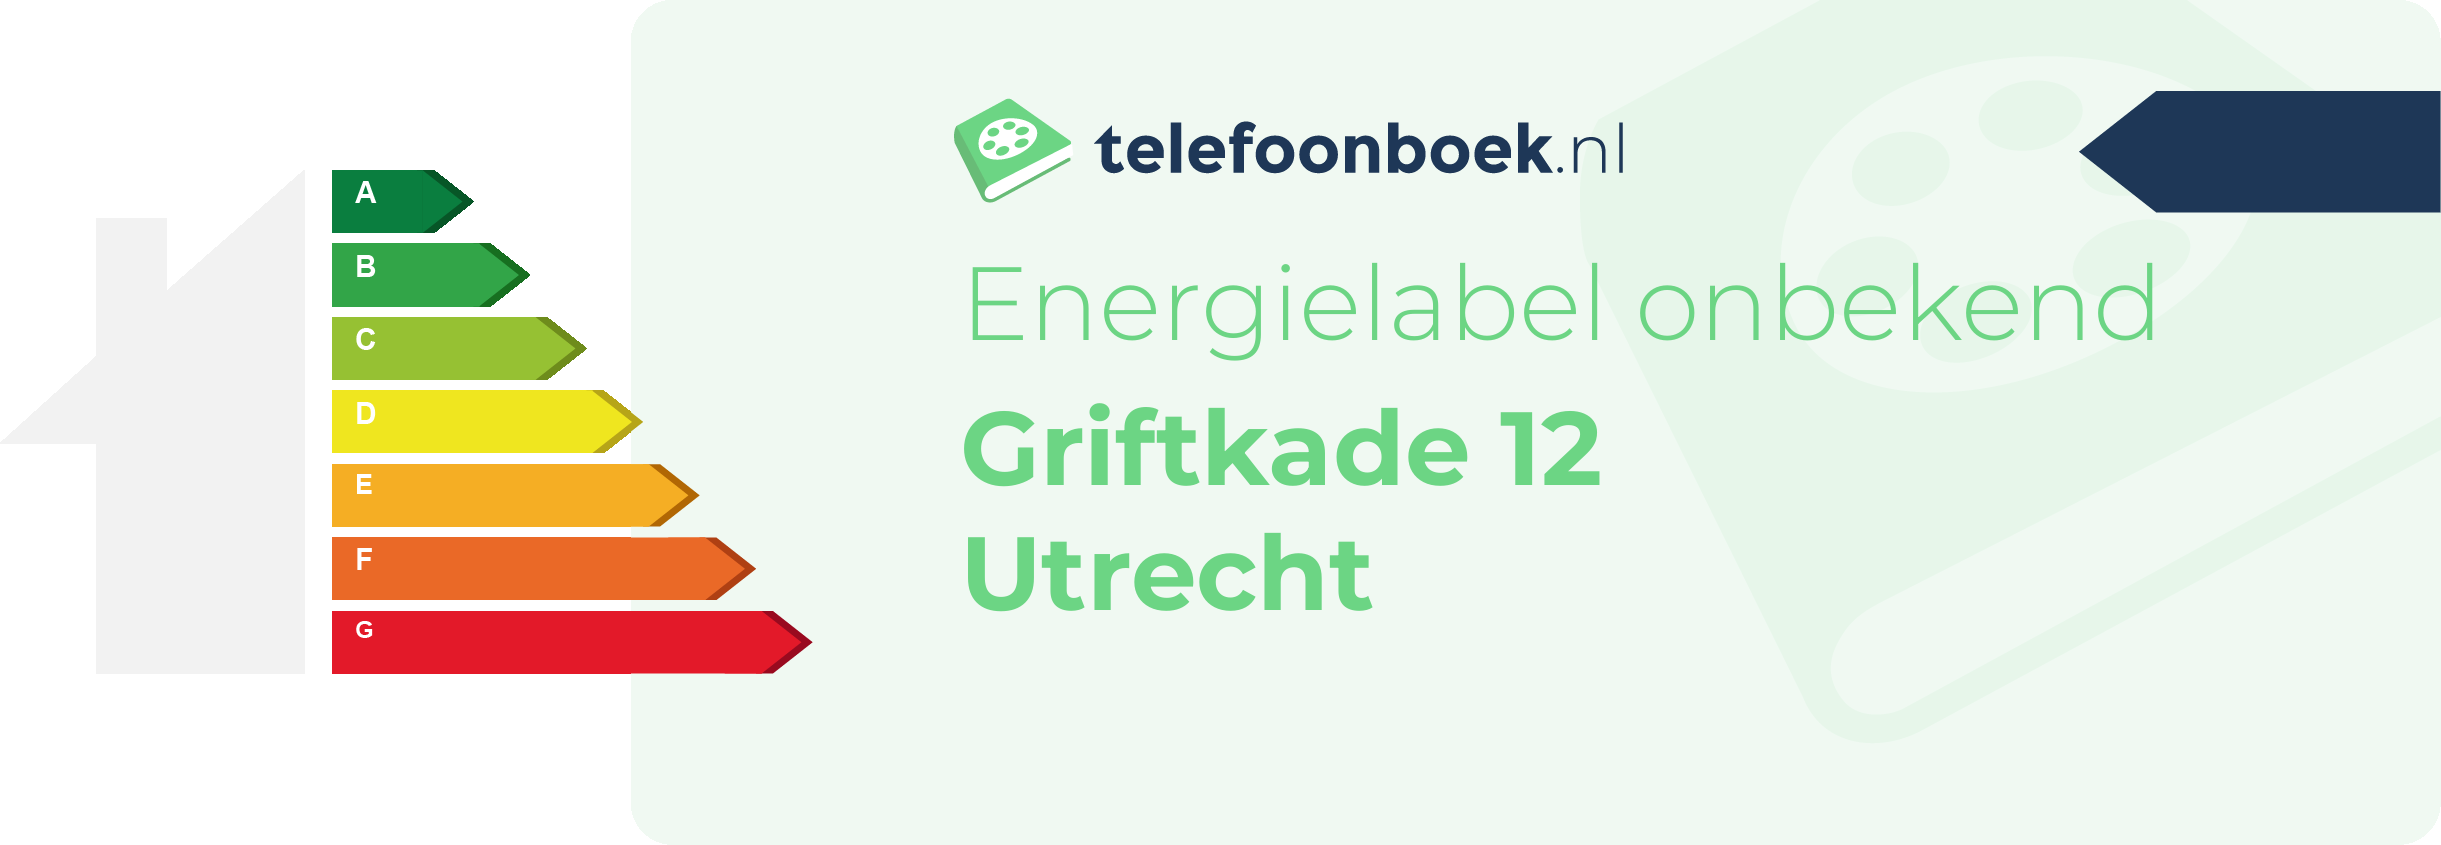 Energielabel Griftkade 12 Utrecht